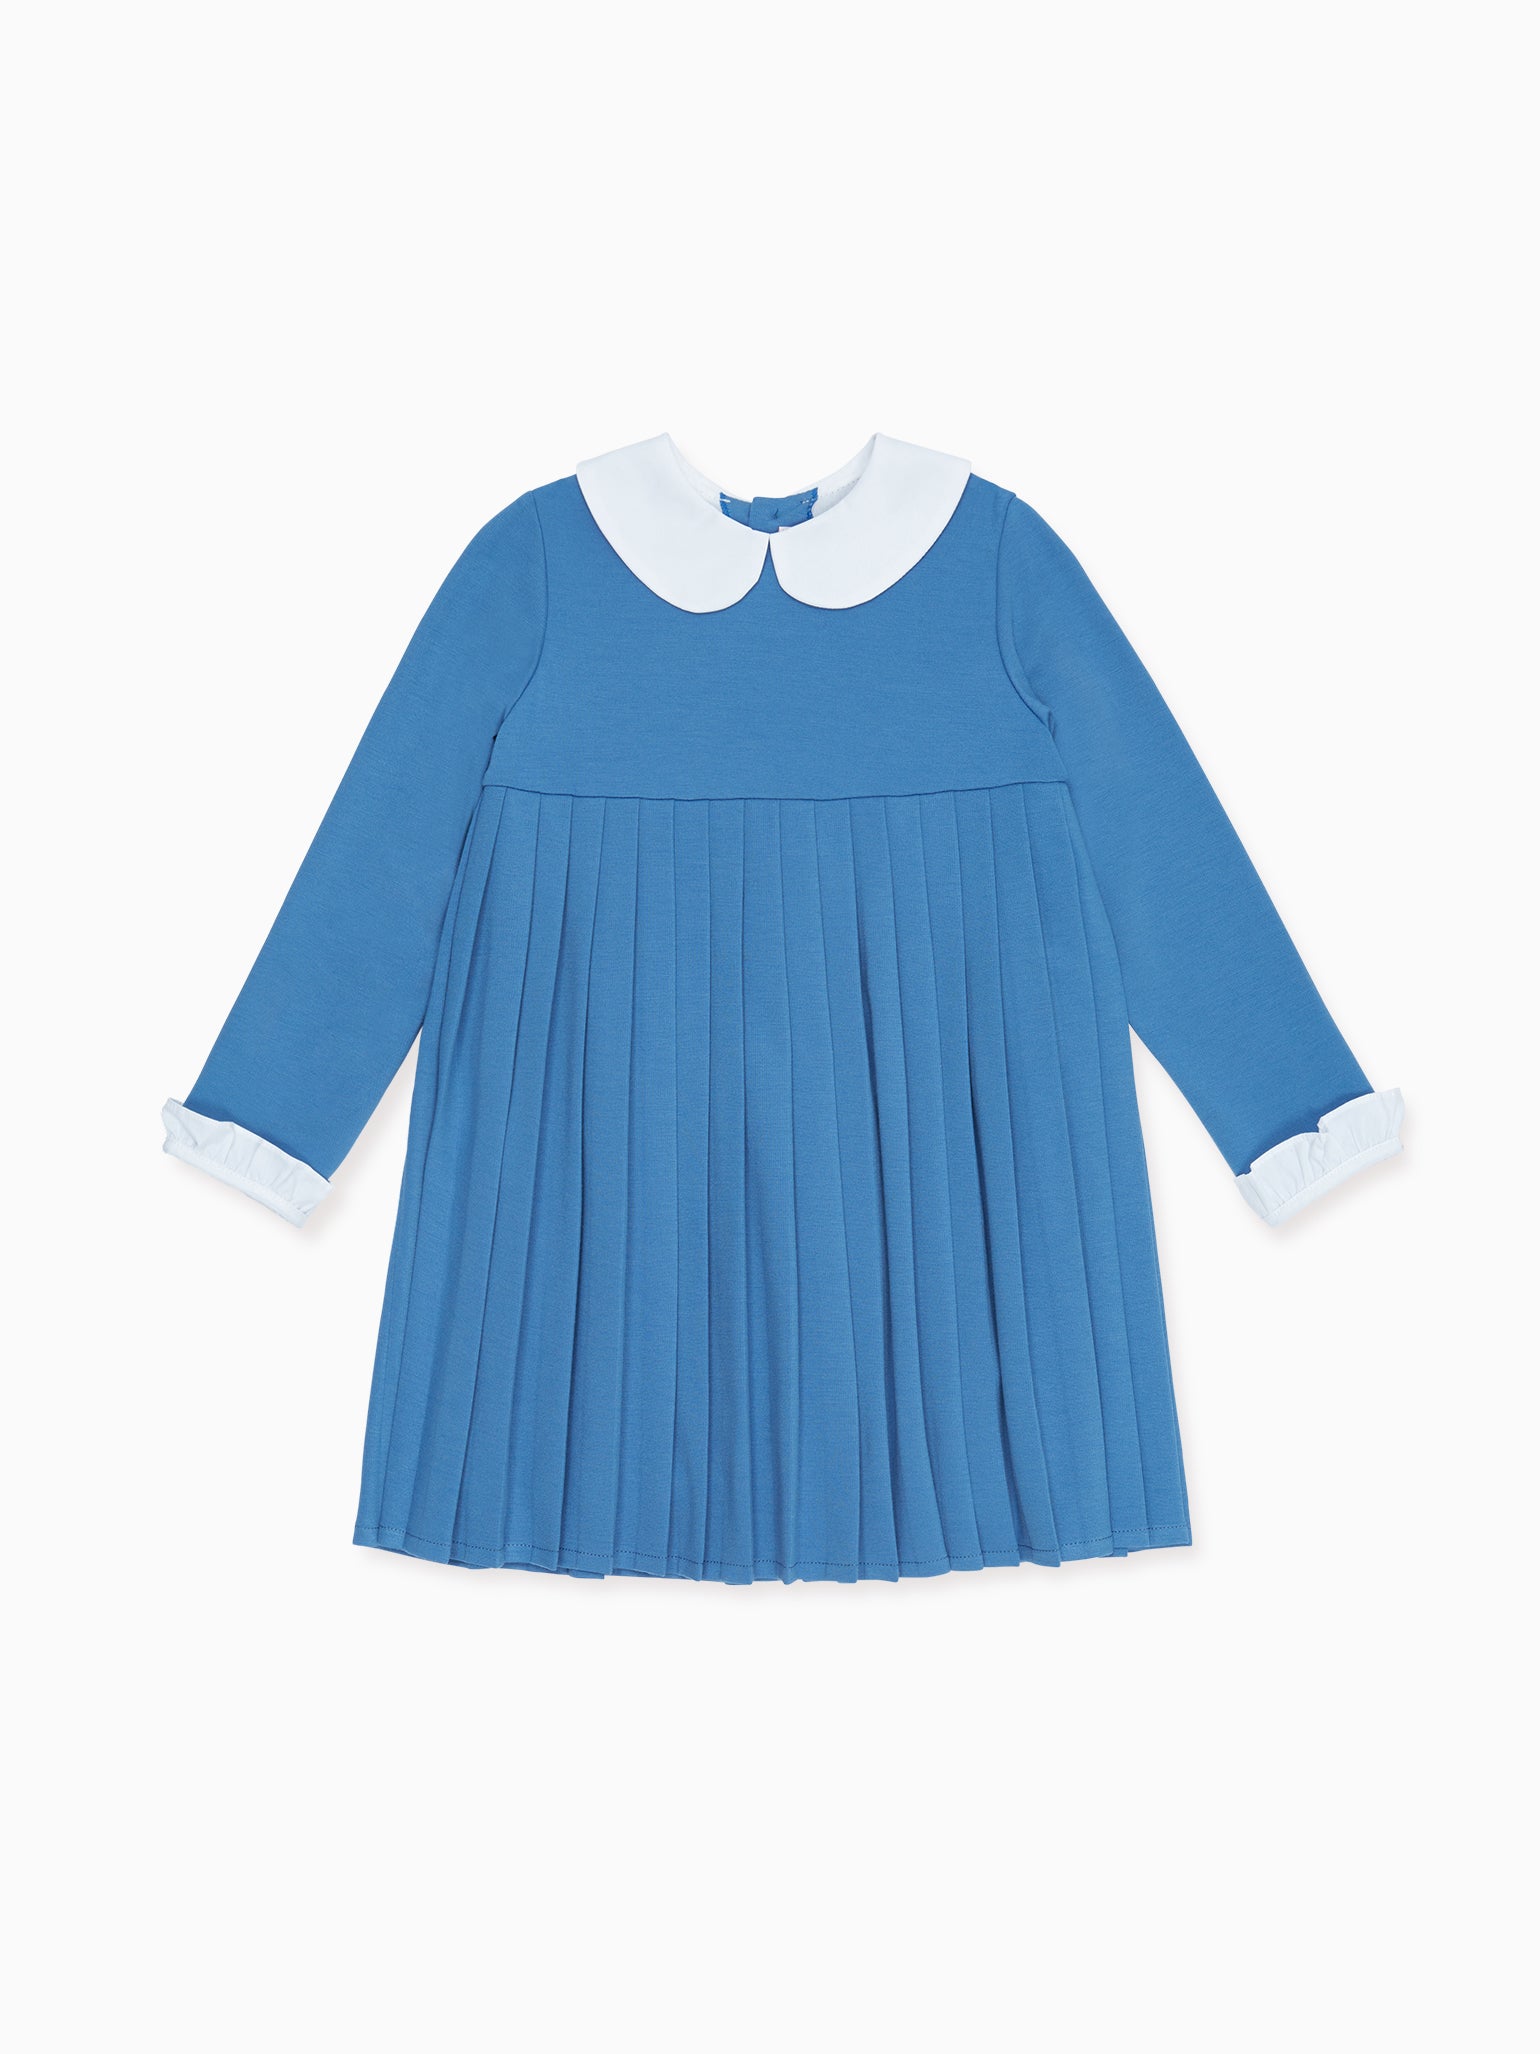 Blue Anna Girl Empire Dress – La Coqueta Kids